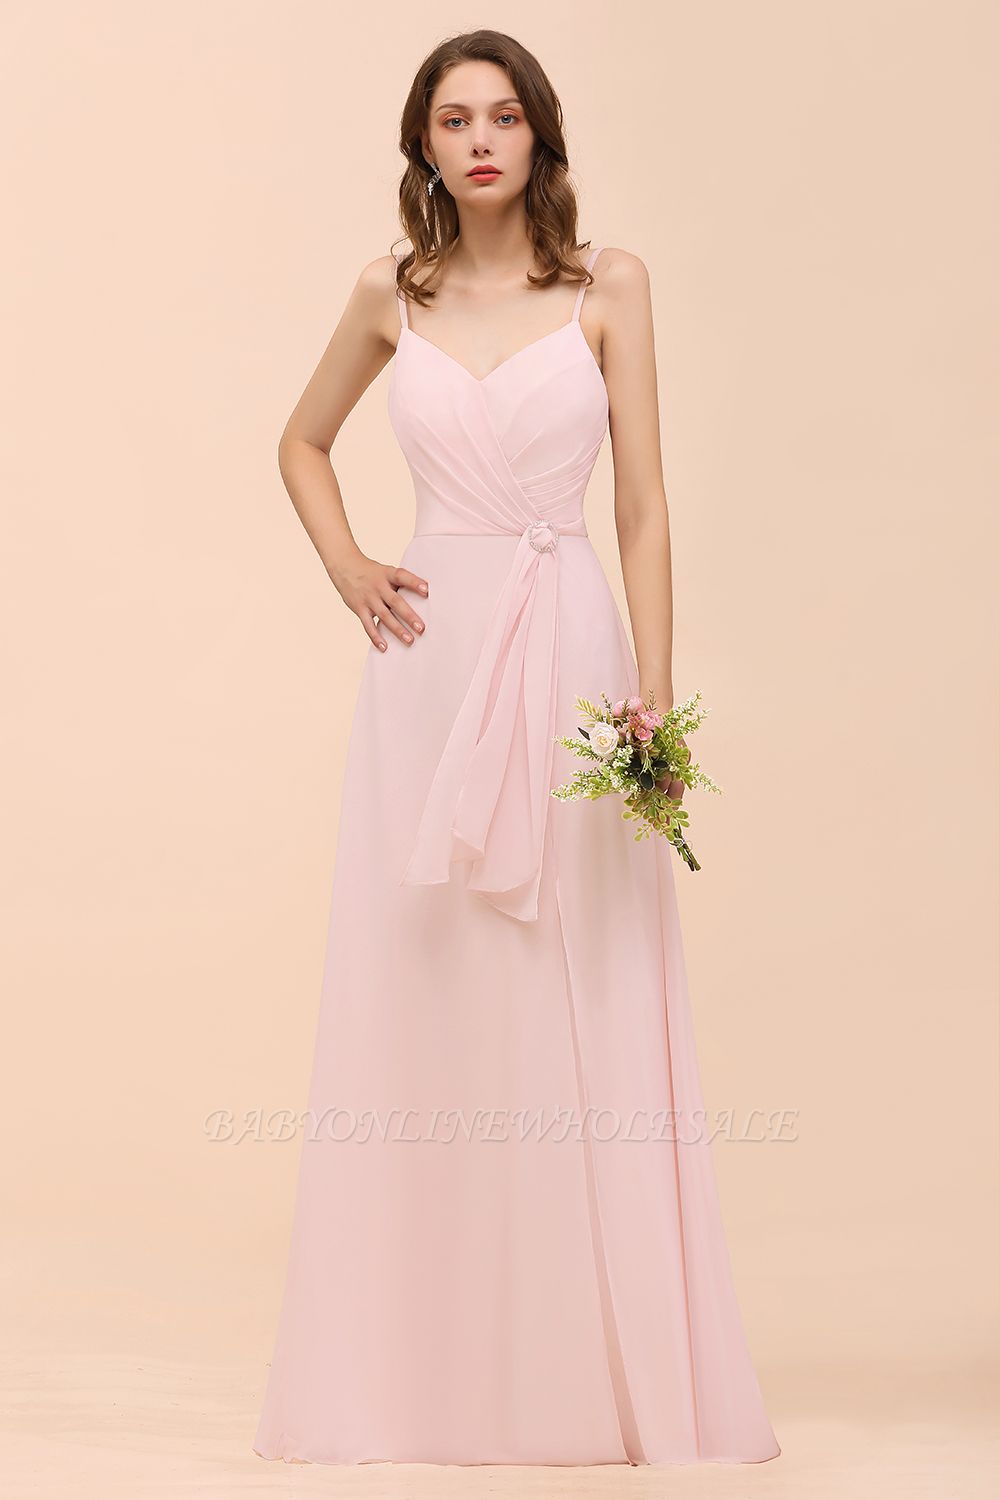 Spaghetti Straps Pink Chiffon Wedding Party Dress Sleeveless Long Bridesmaid Dress